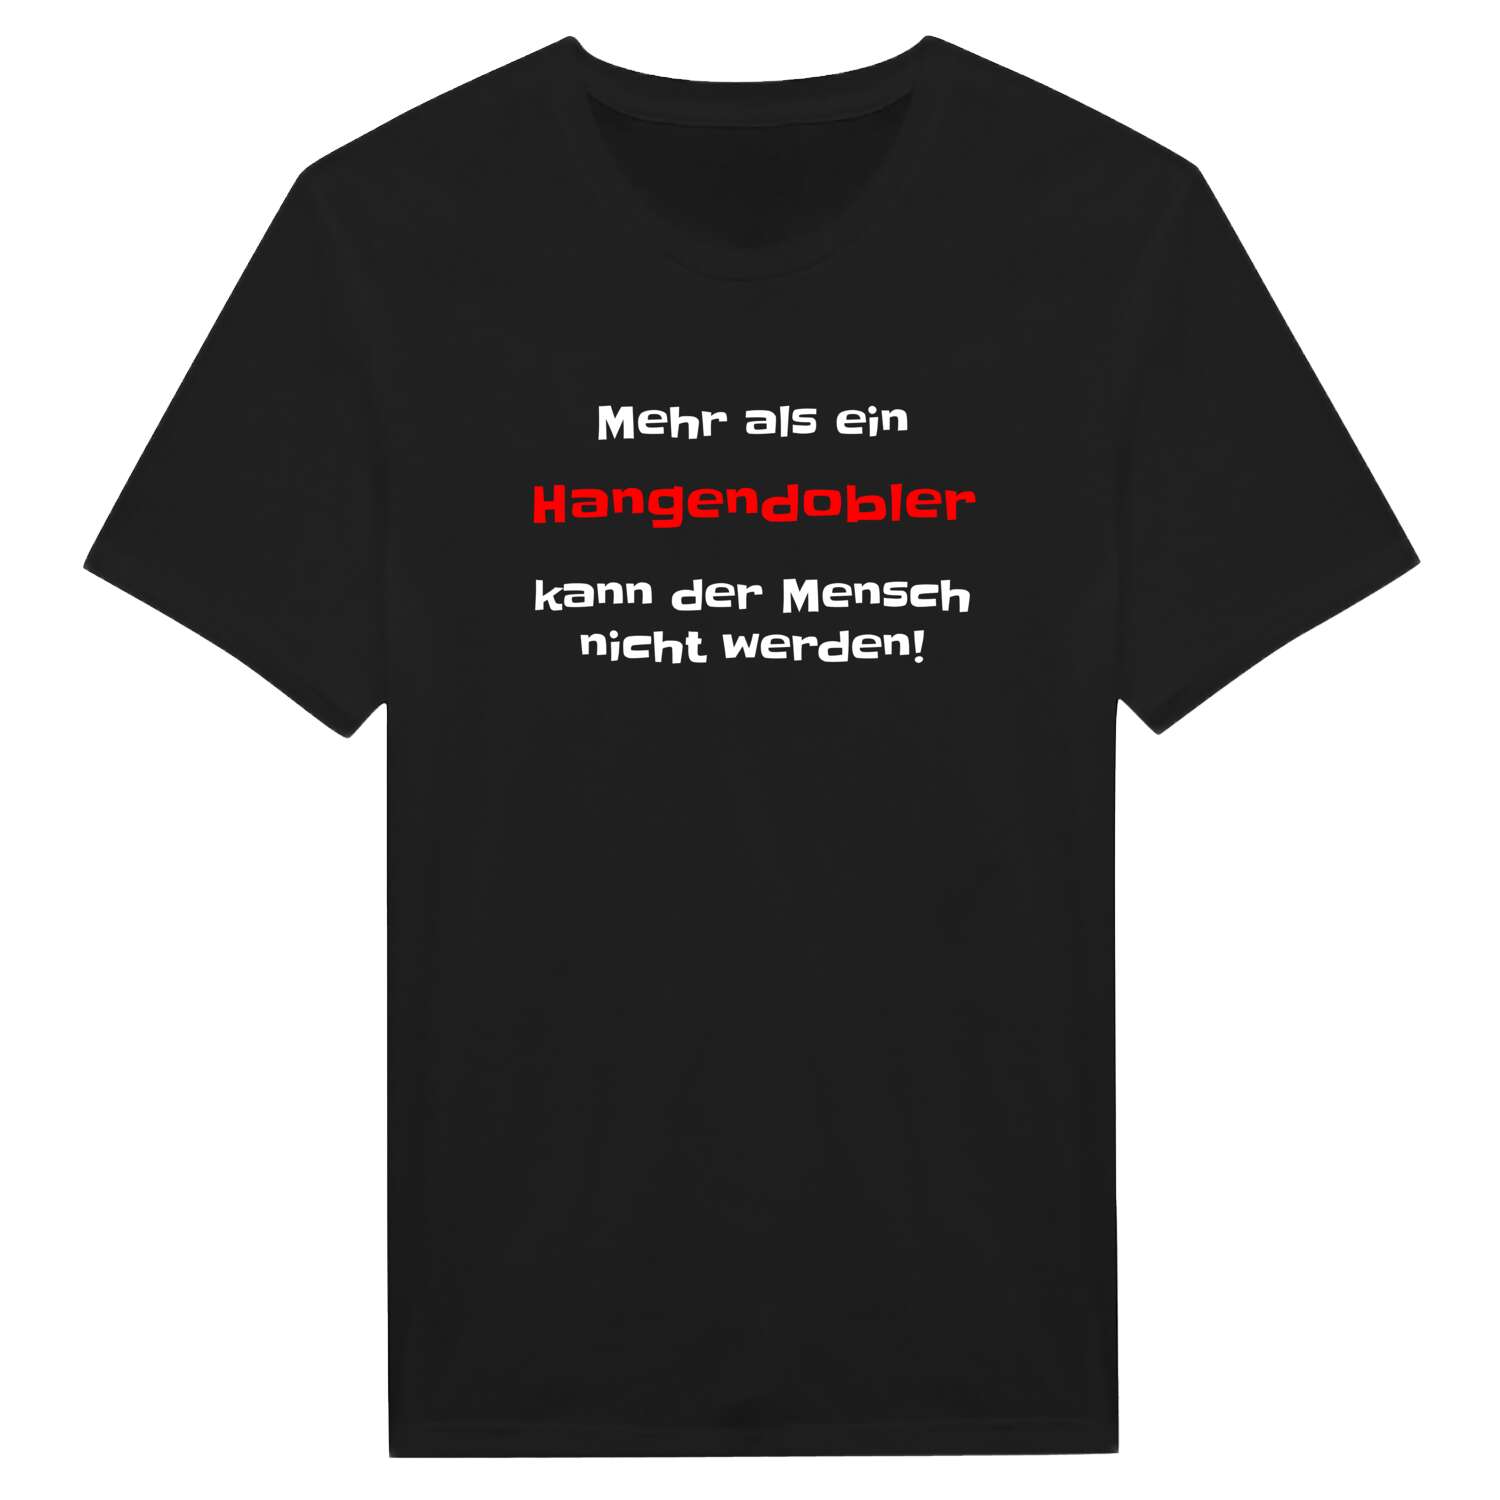 Hangendobl T-Shirt »Mehr als ein«